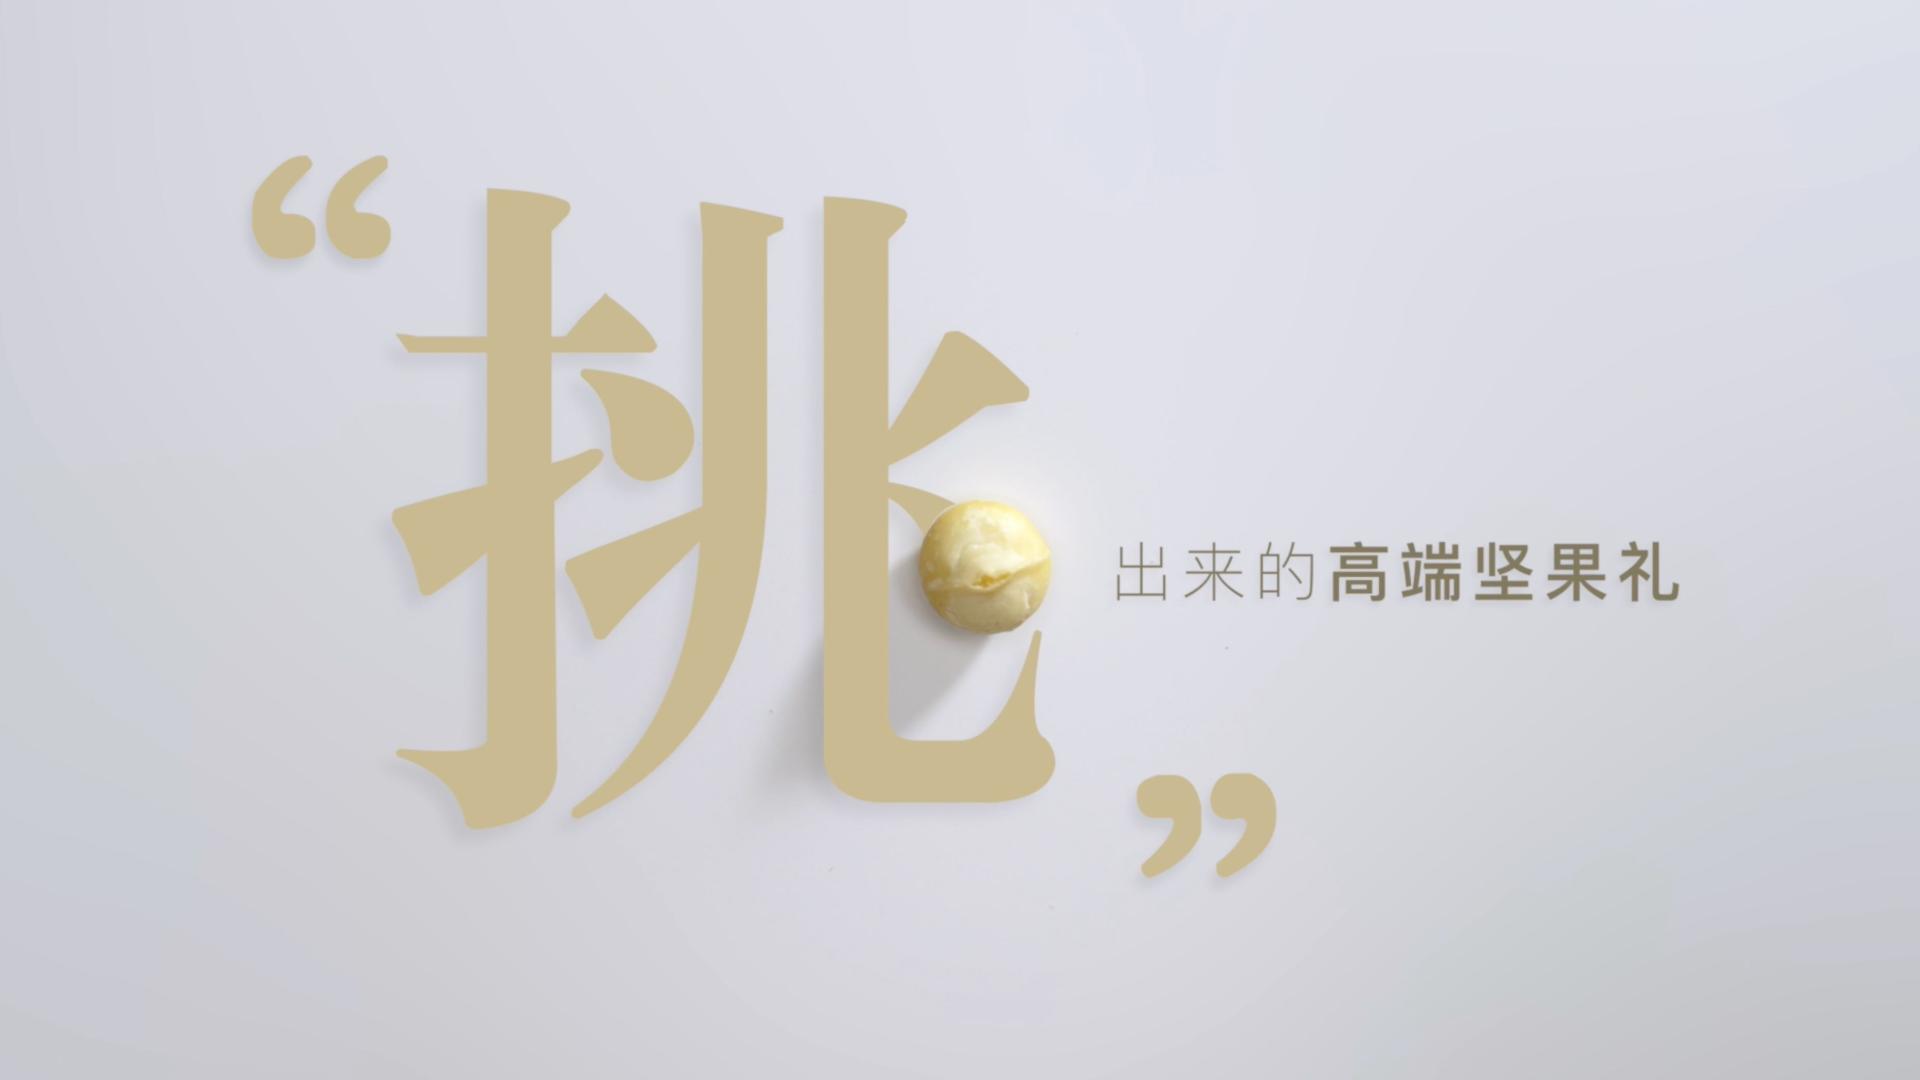 「挑」——挑出来的高端坚果礼｜臻味坚果品牌片